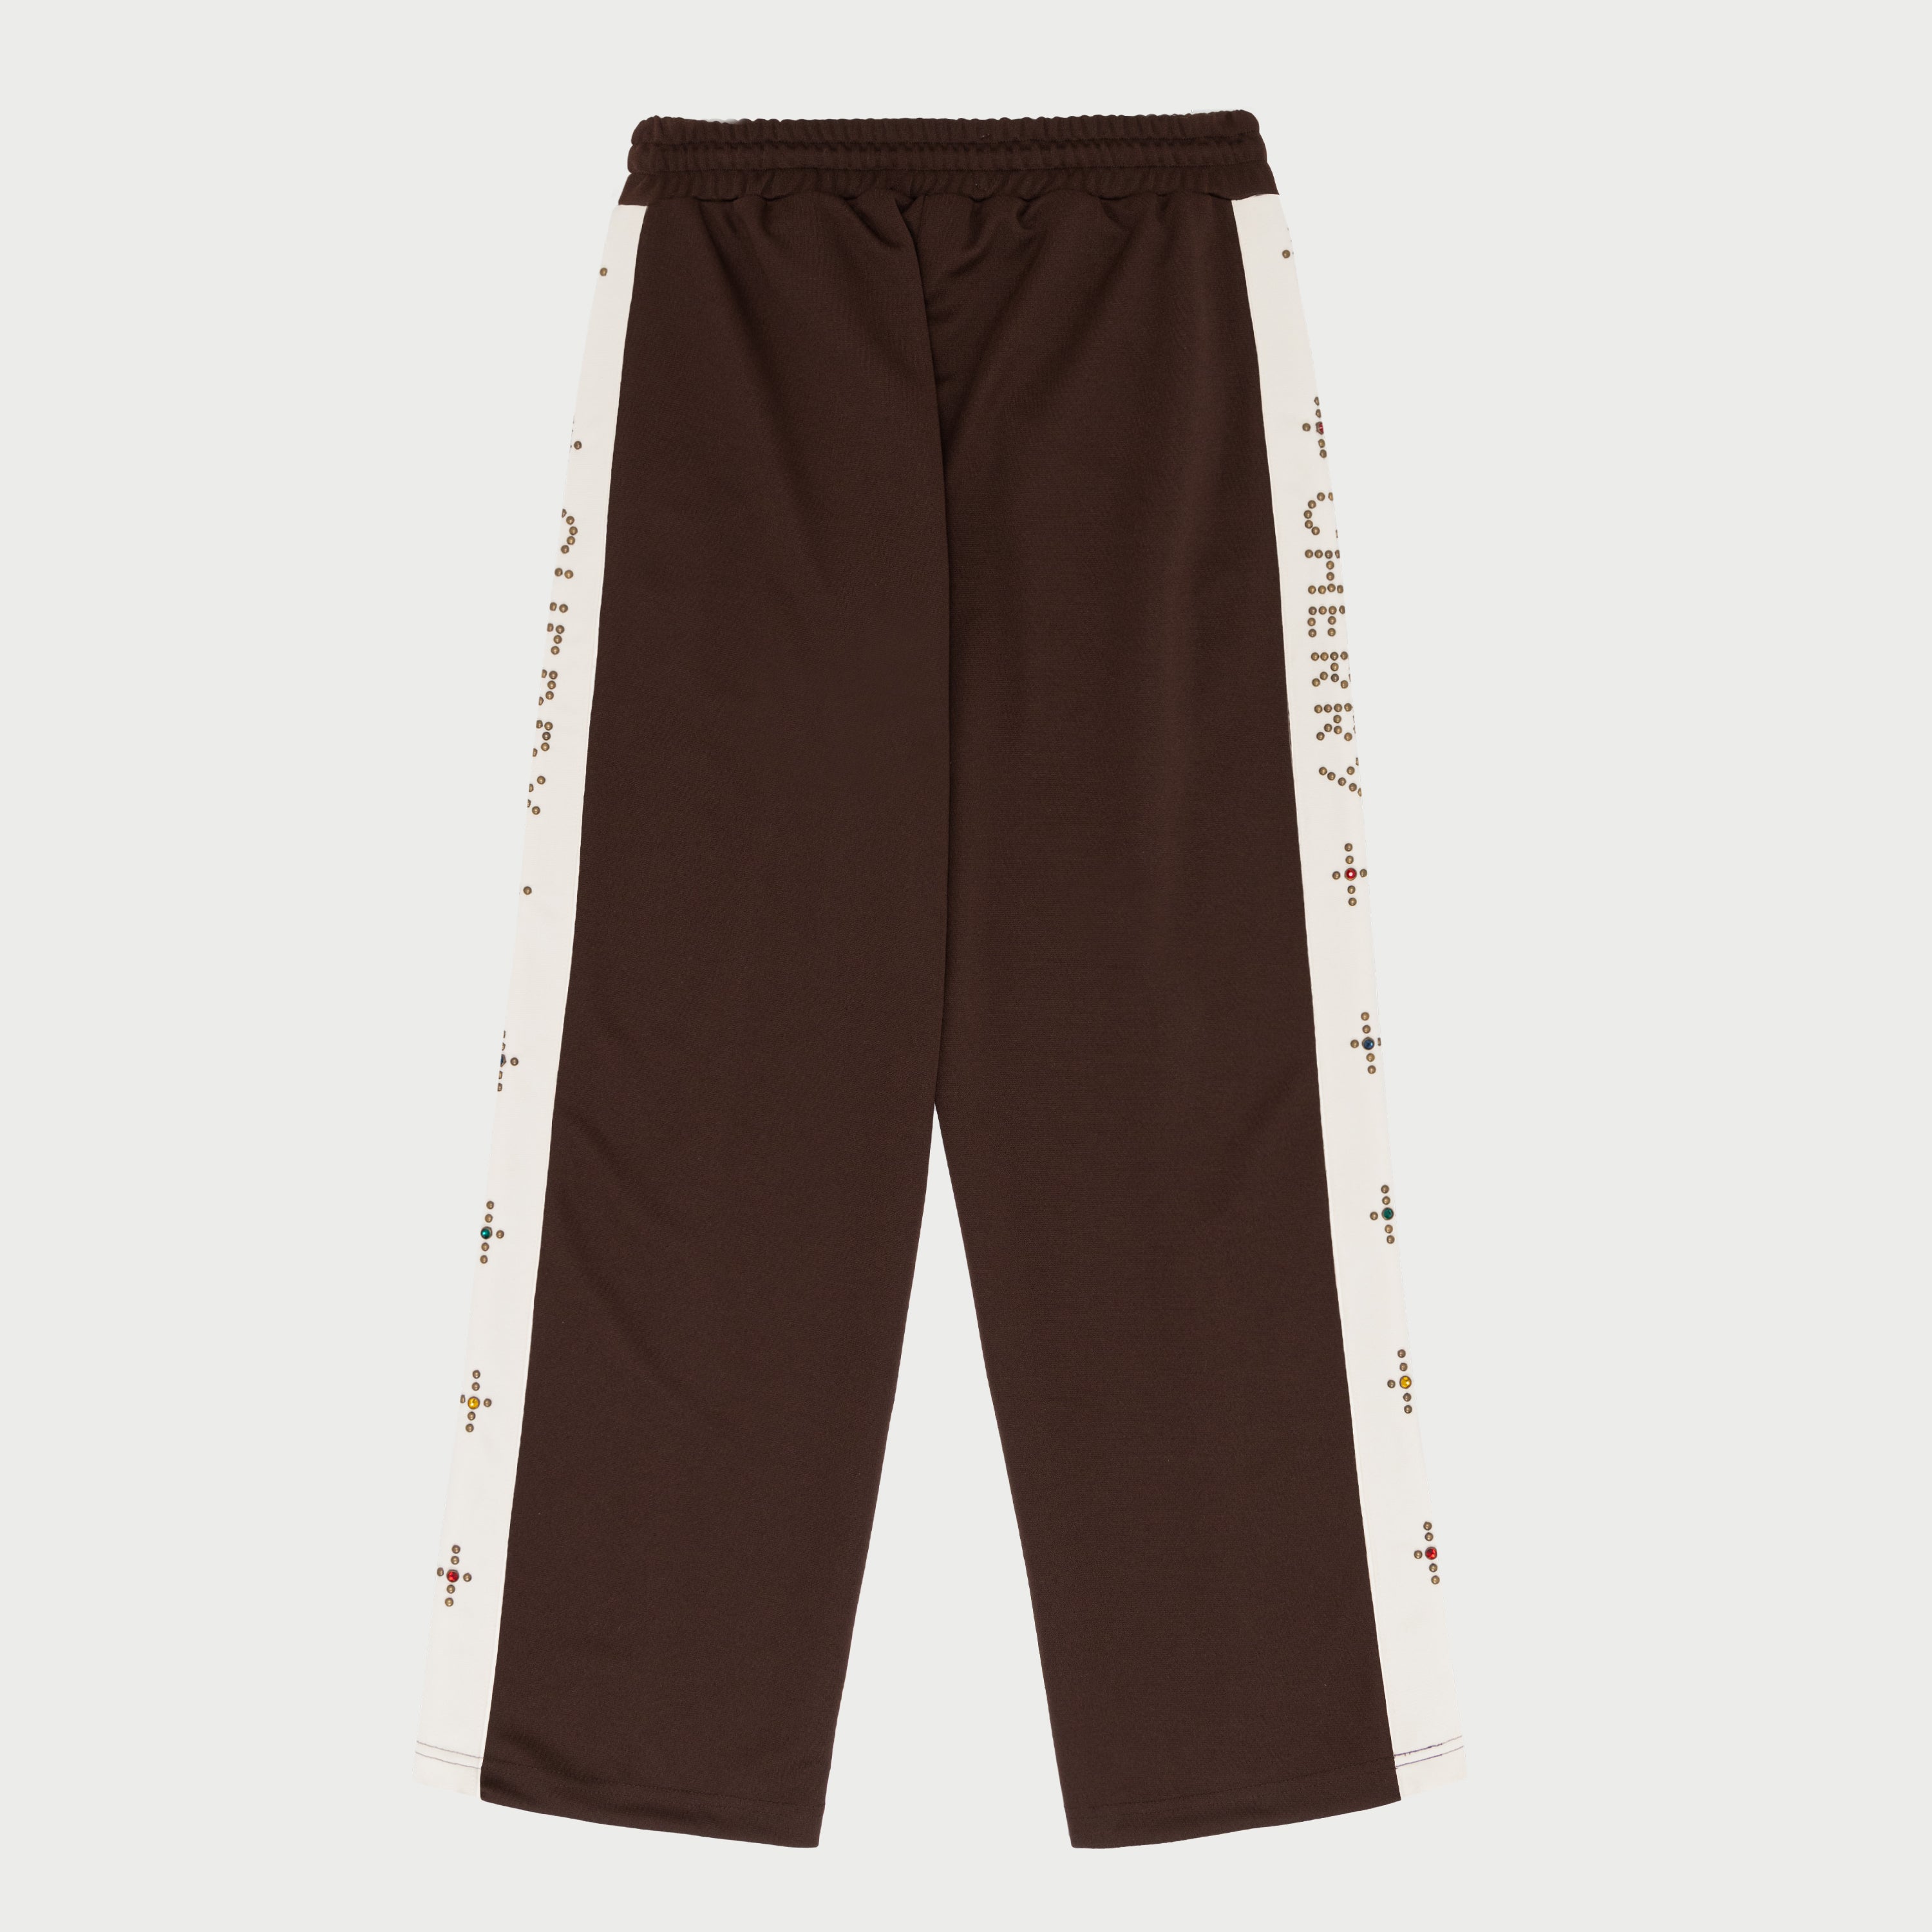 Studded Track Pants (Brown)